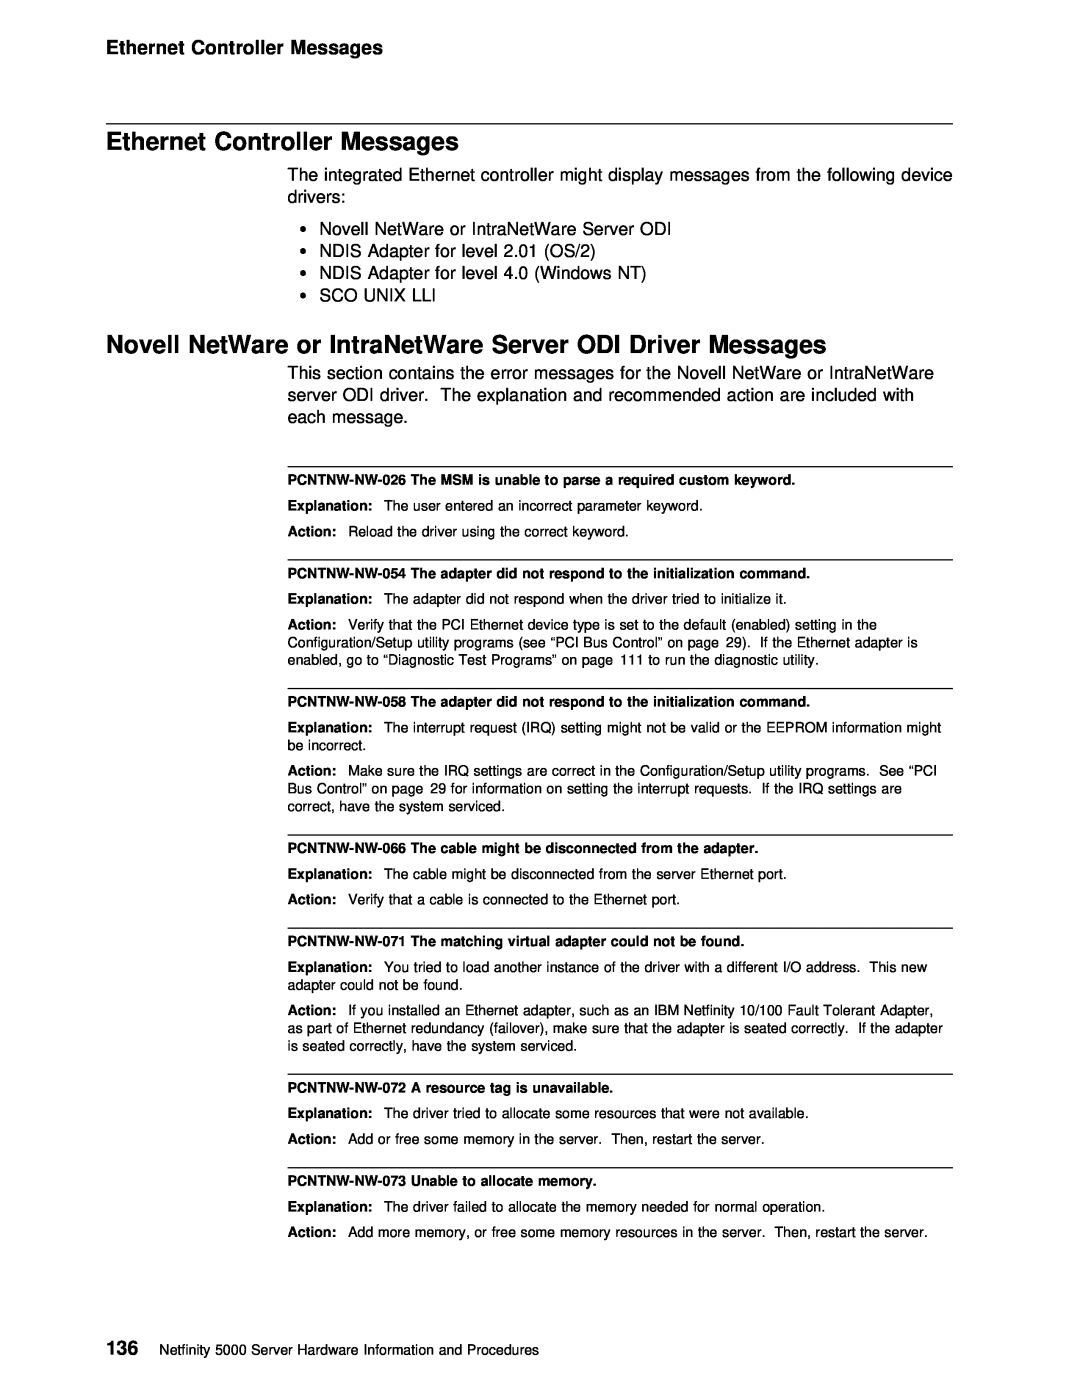 IBM 5000 manual Ethernet Controller Messages, Novell NetWare or IntraNetWare Server ODI Driver Messages 